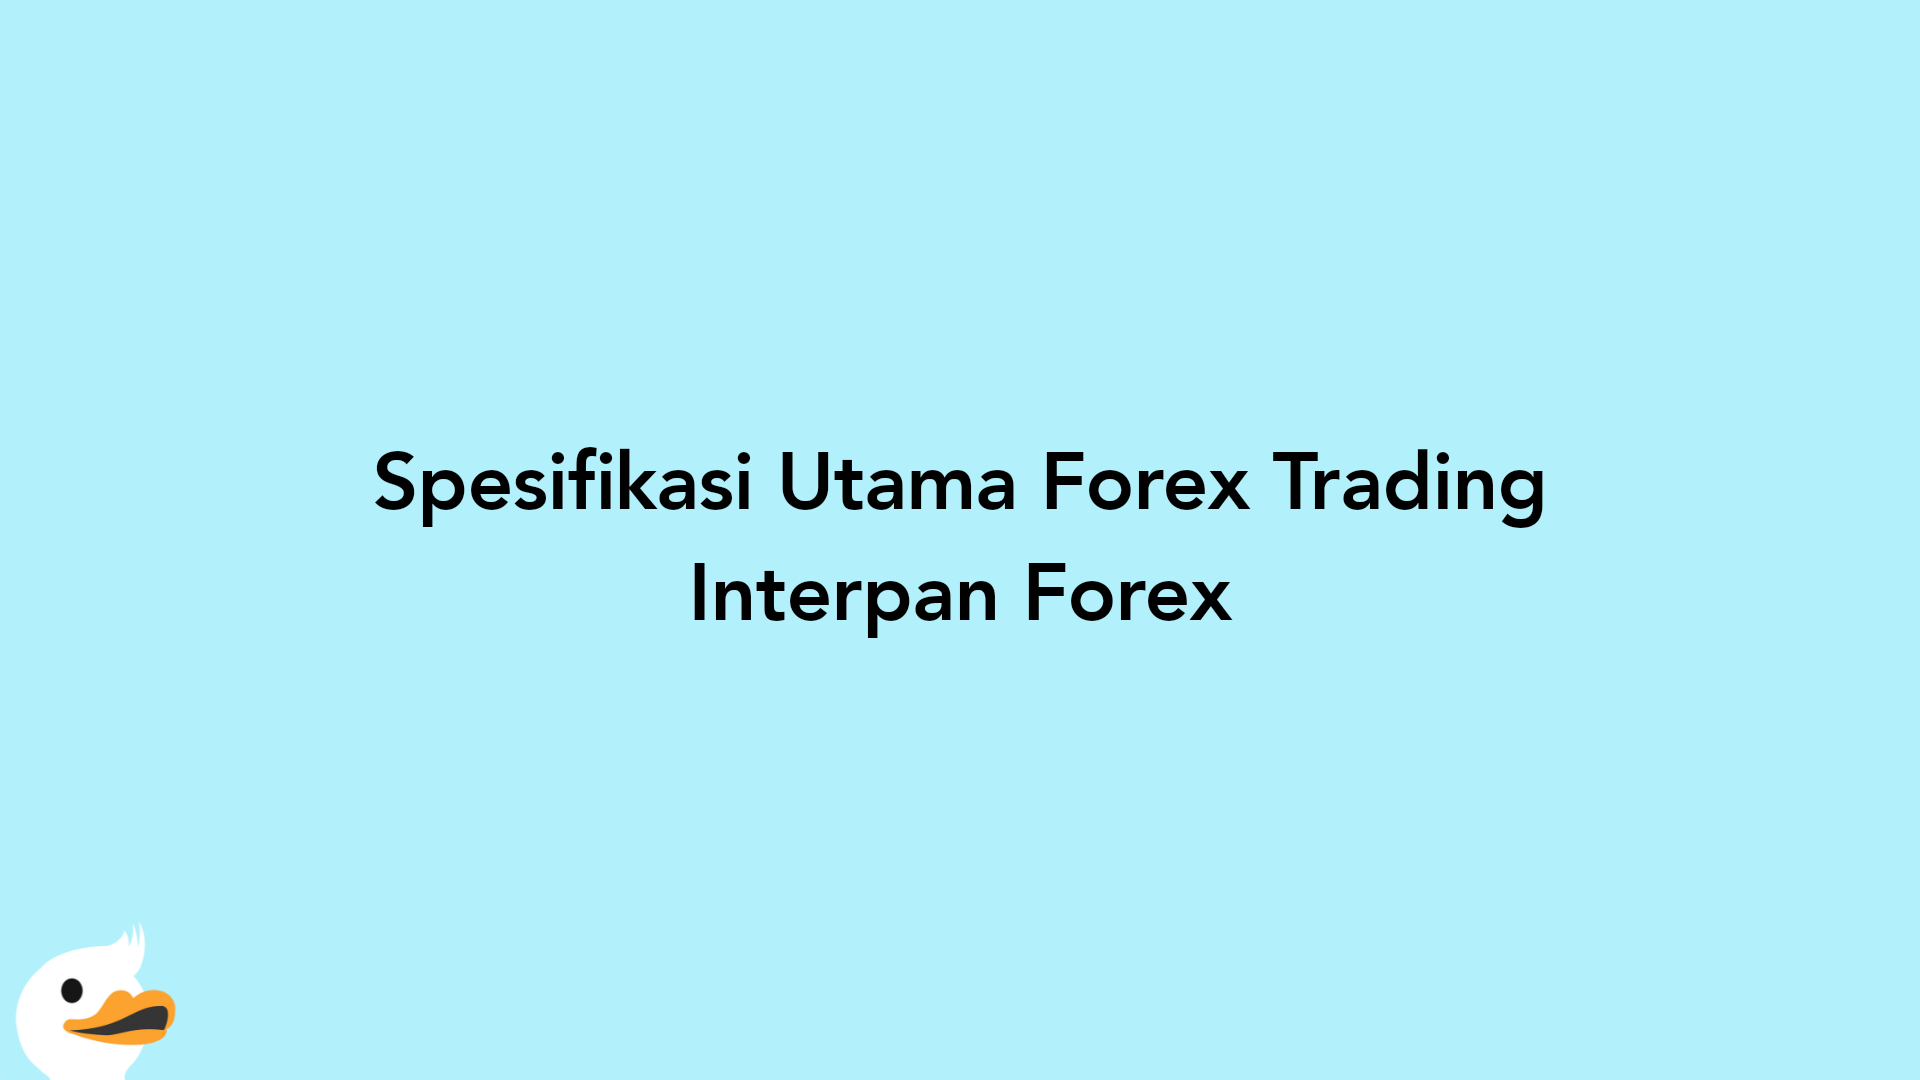 Spesifikasi Utama Forex Trading Interpan Forex